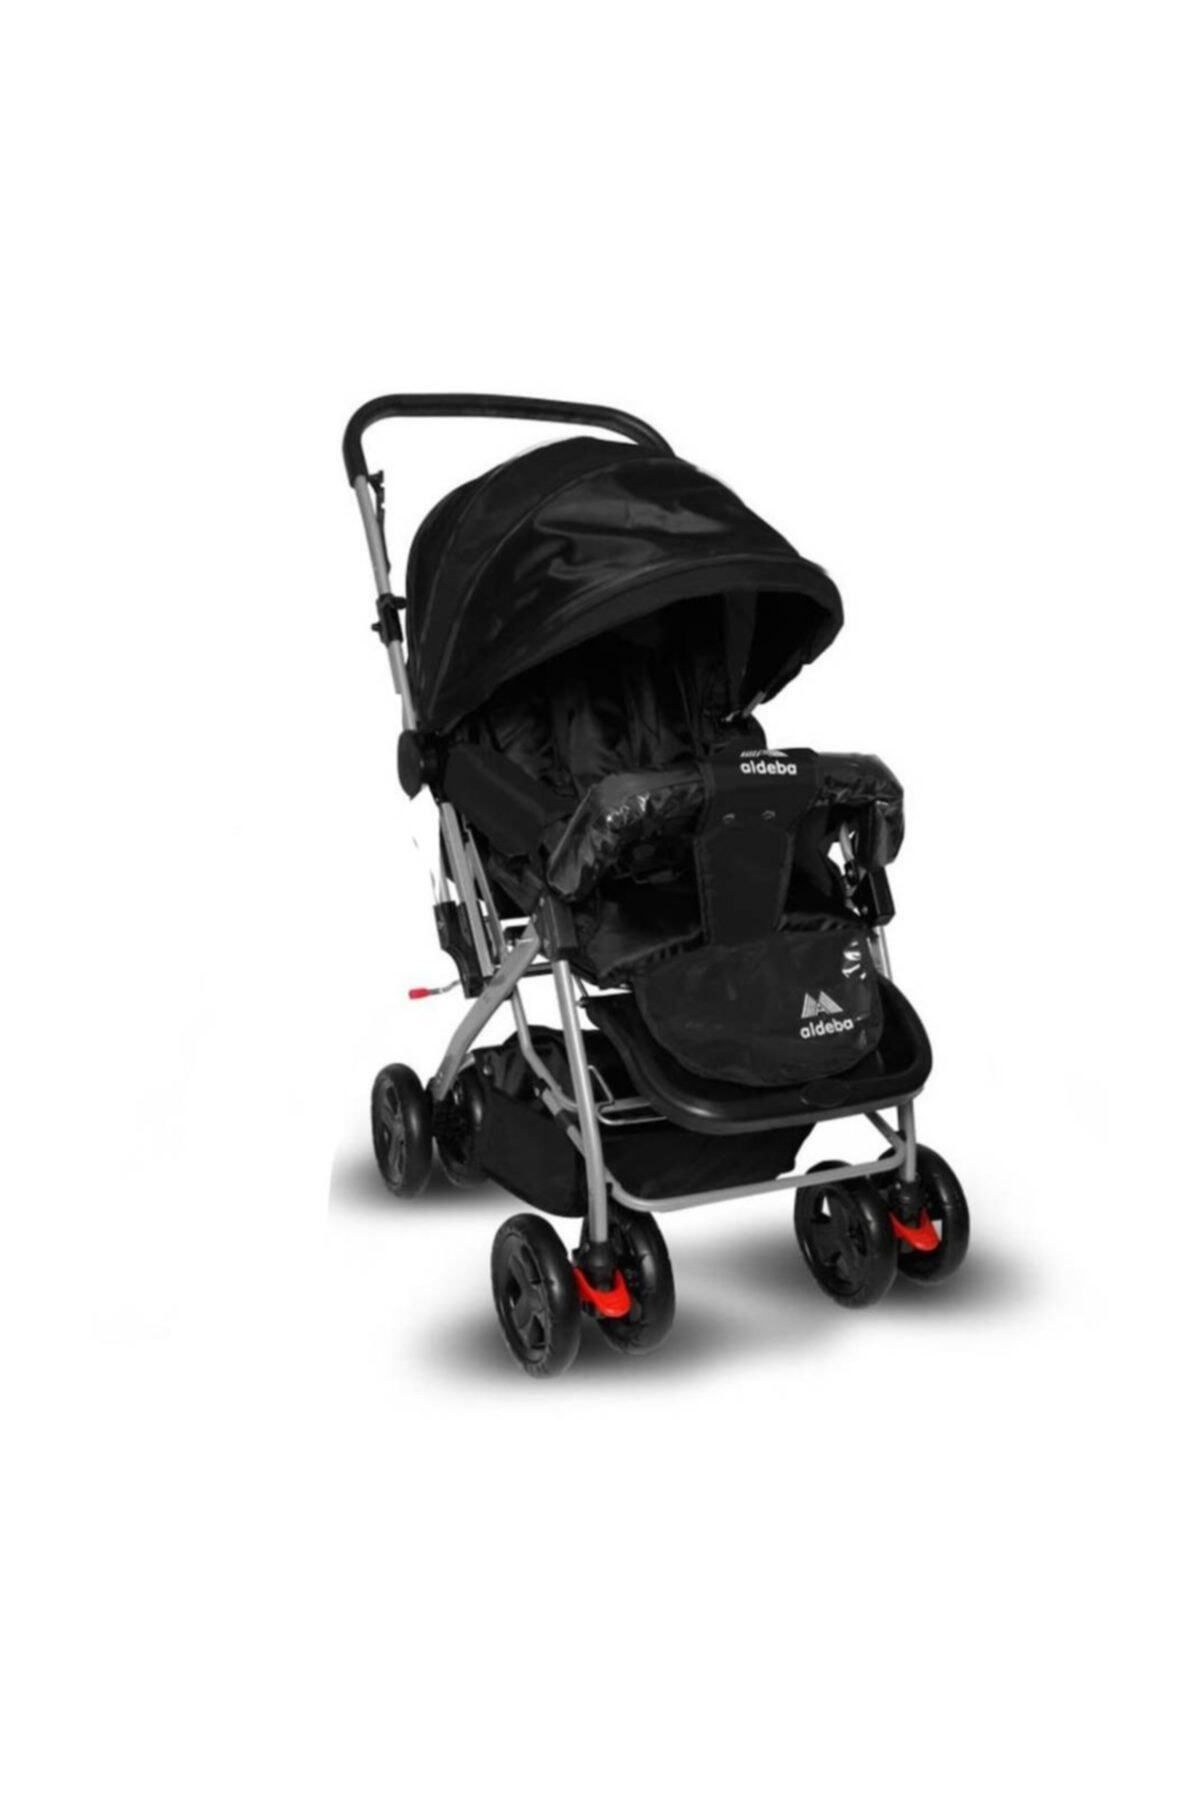 ALDEBA 8028 Çift Yönlü Bebek Arabası Siyah